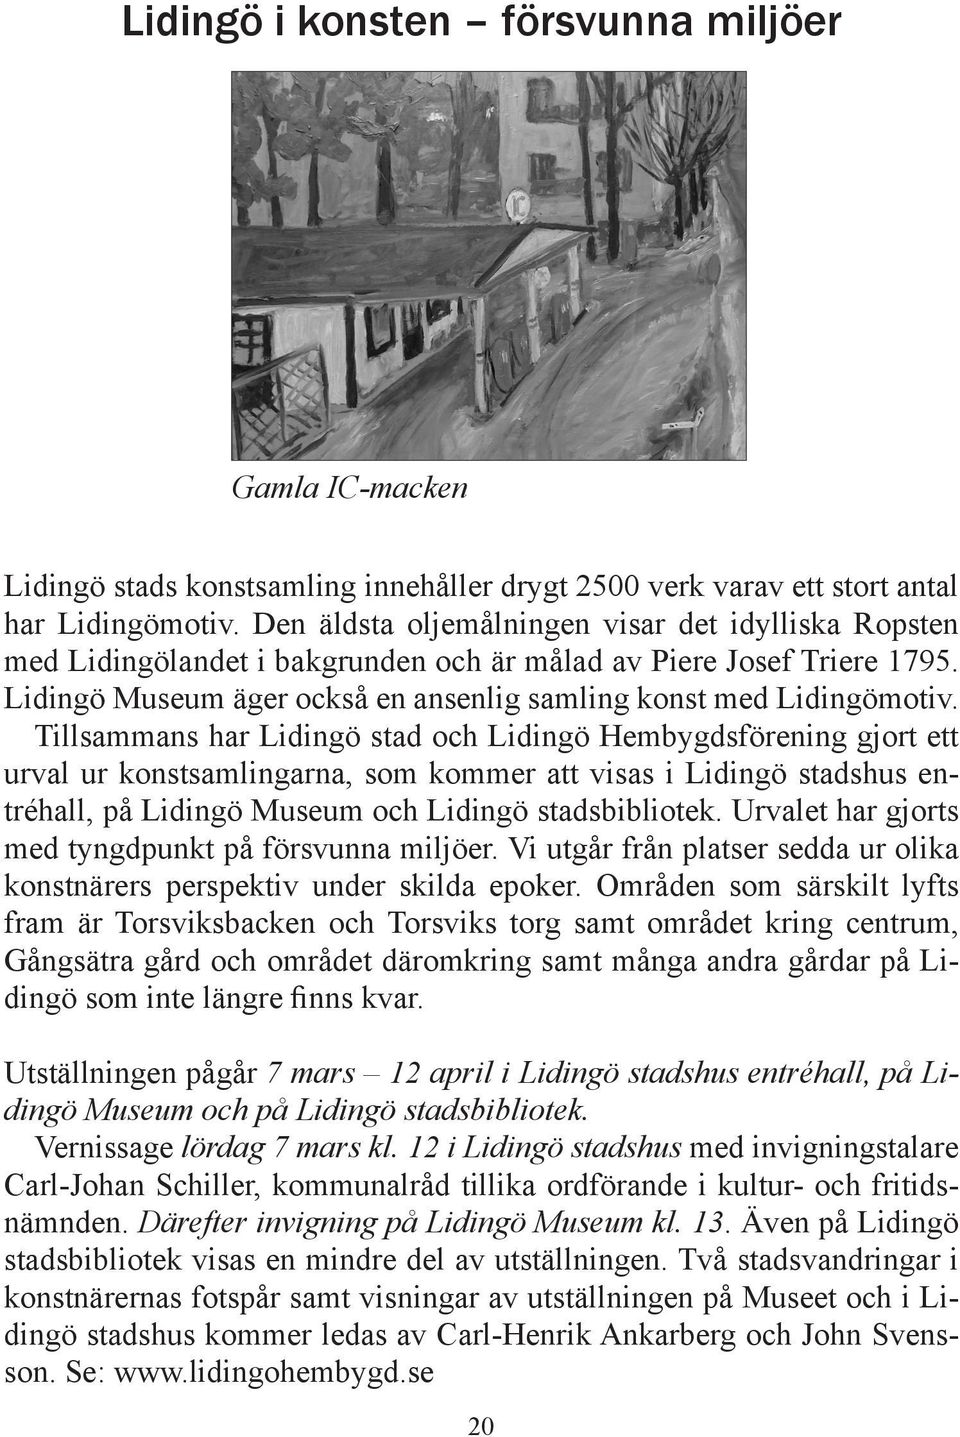 Tillsammans har Lidingö stad och Lidingö Hembygdsförening gjort ett urval ur konstsamlingarna, som kommer att visas i Lidingö stadshus entréhall, på Lidingö Museum och Lidingö stadsbibliotek.